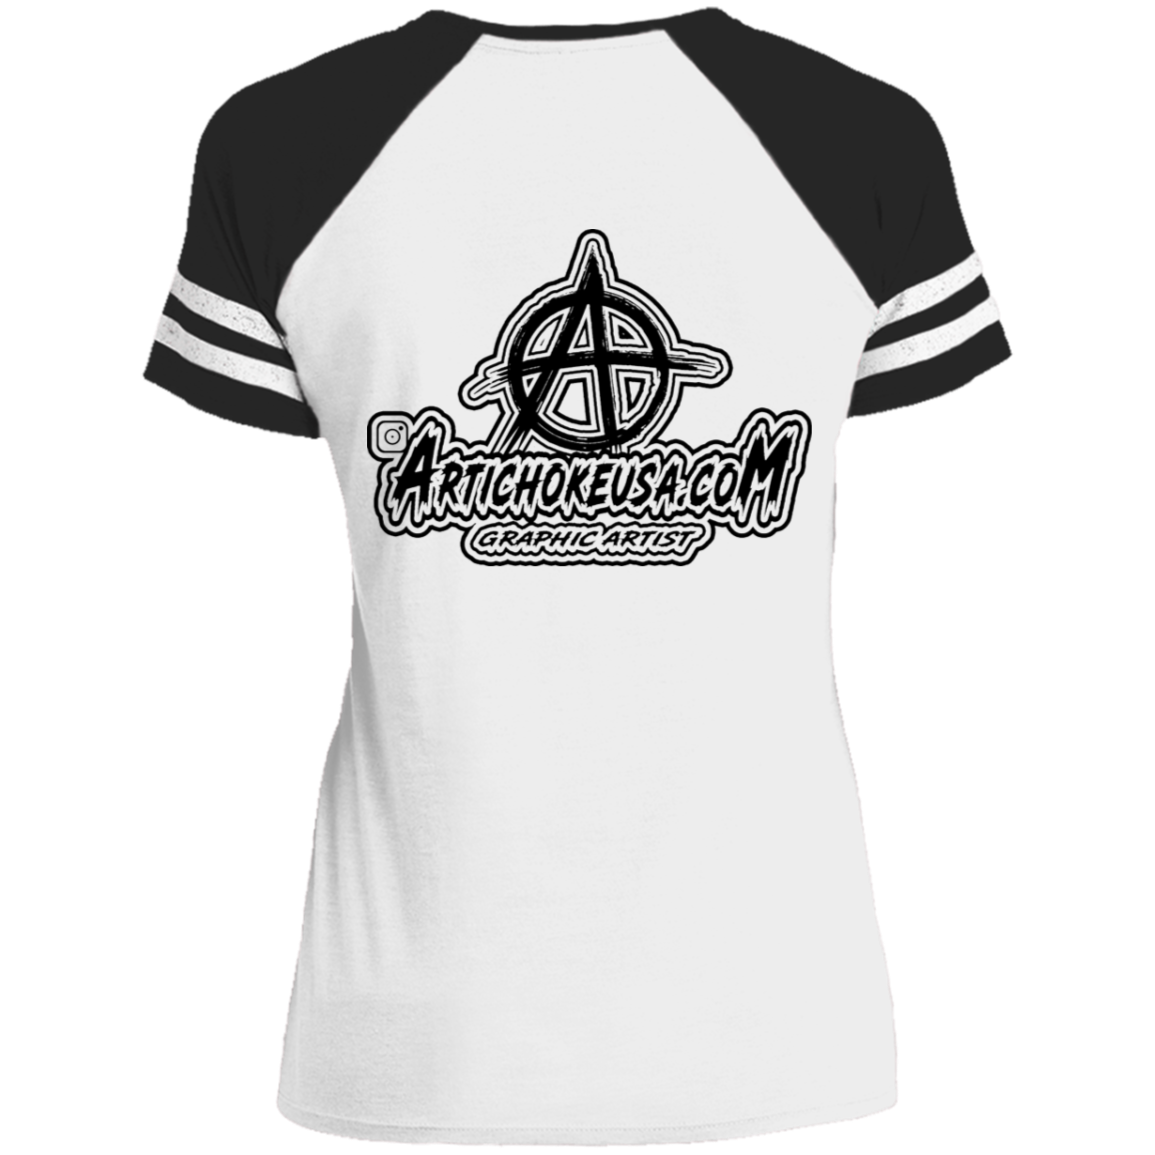 ArtichokeUSA Custom Design. Adobo. Adidas Parody. Ladies' Game V-Neck T-Shirt